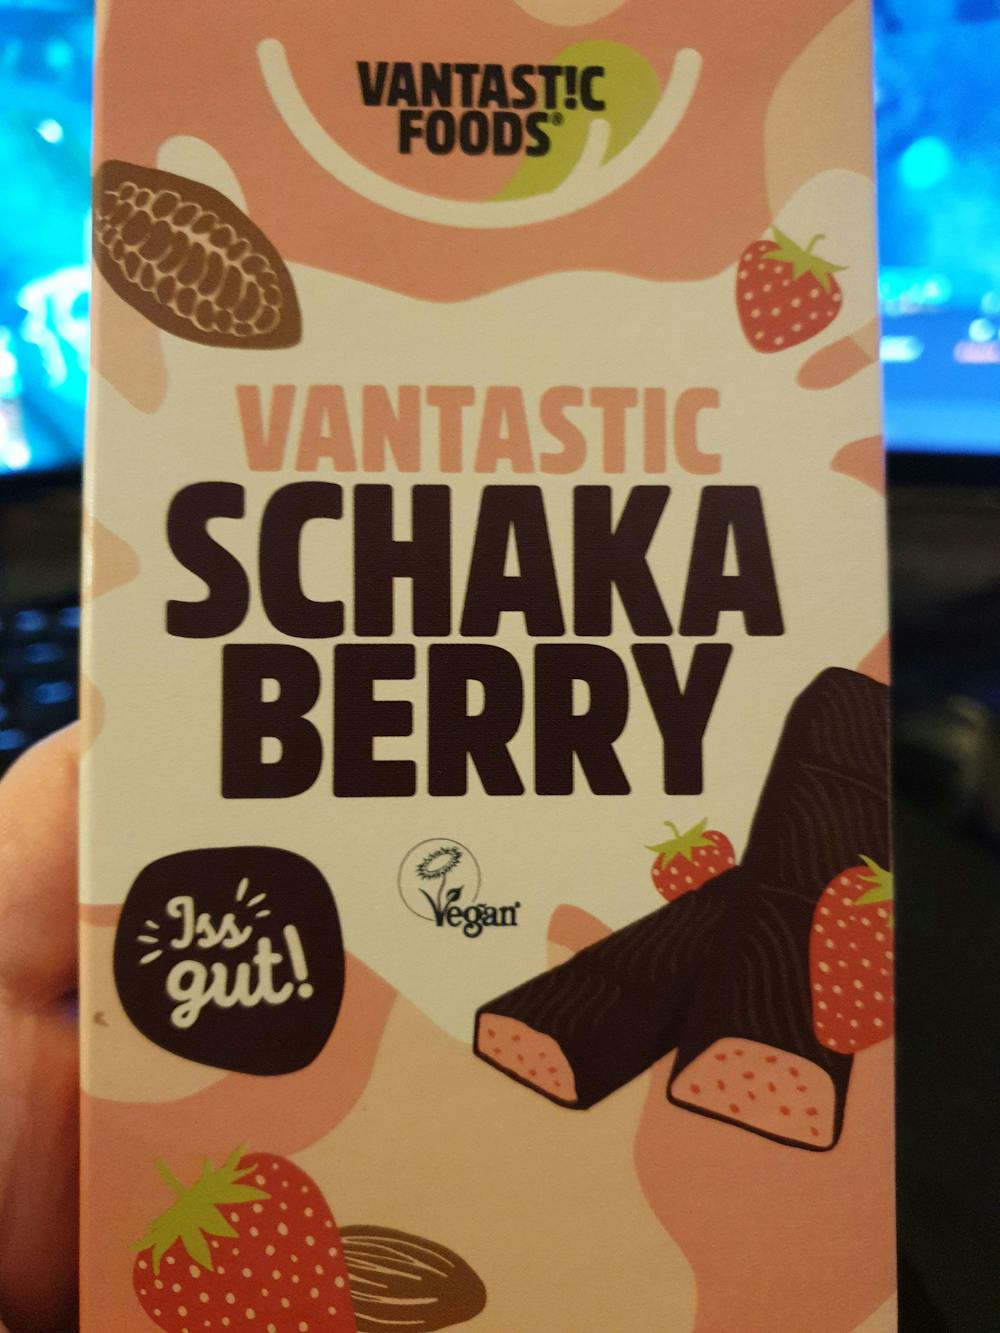 Vantastic Schaka Berry, Vantastic foods 